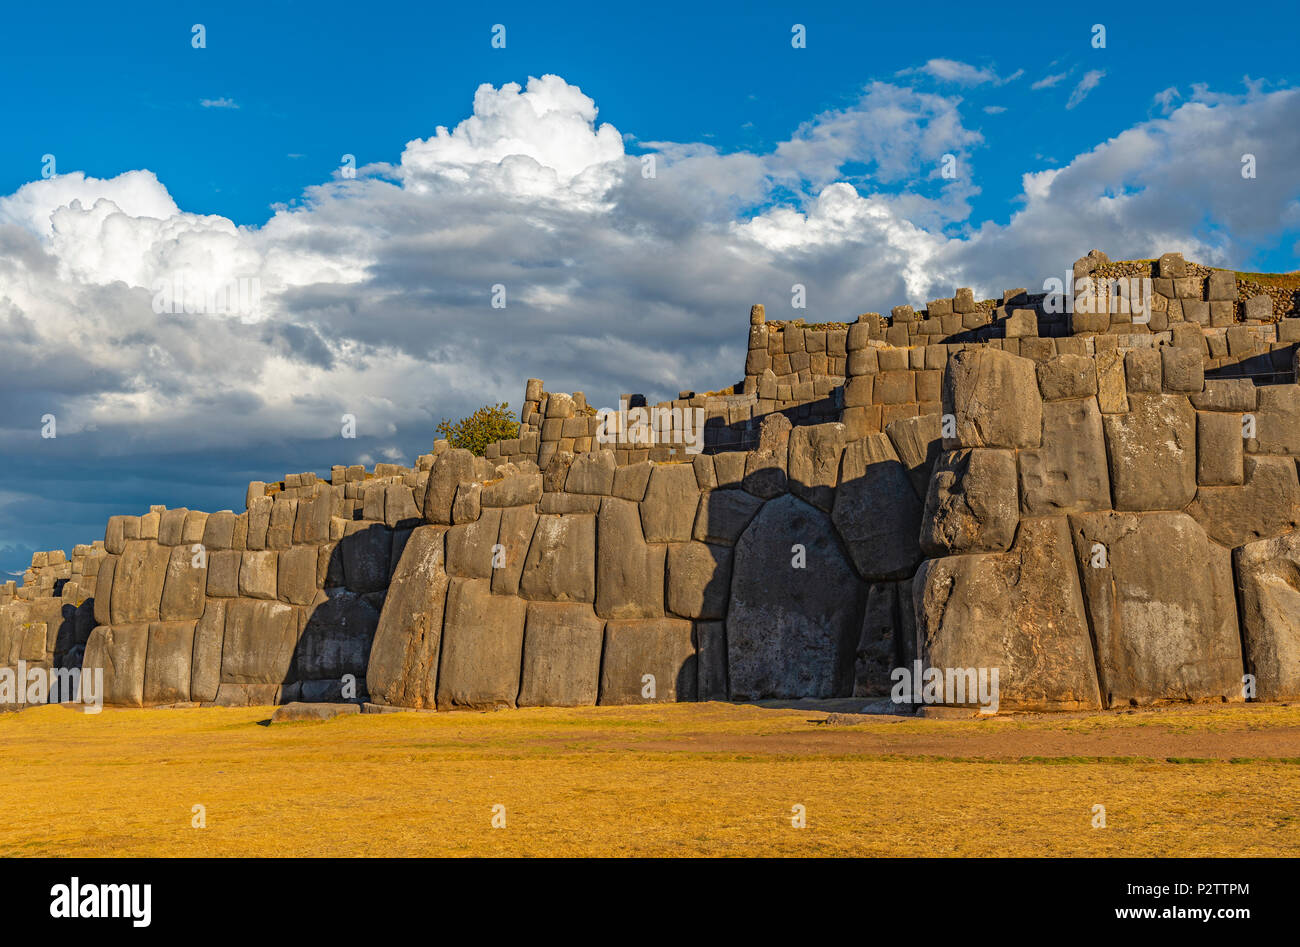 La fortaleza inca de Sacsayhuaman al atardecer, justo a las afueras de la ciudad del Cusco, en la cordillera de los Andes del Perú, América del Sur. Foto de stock